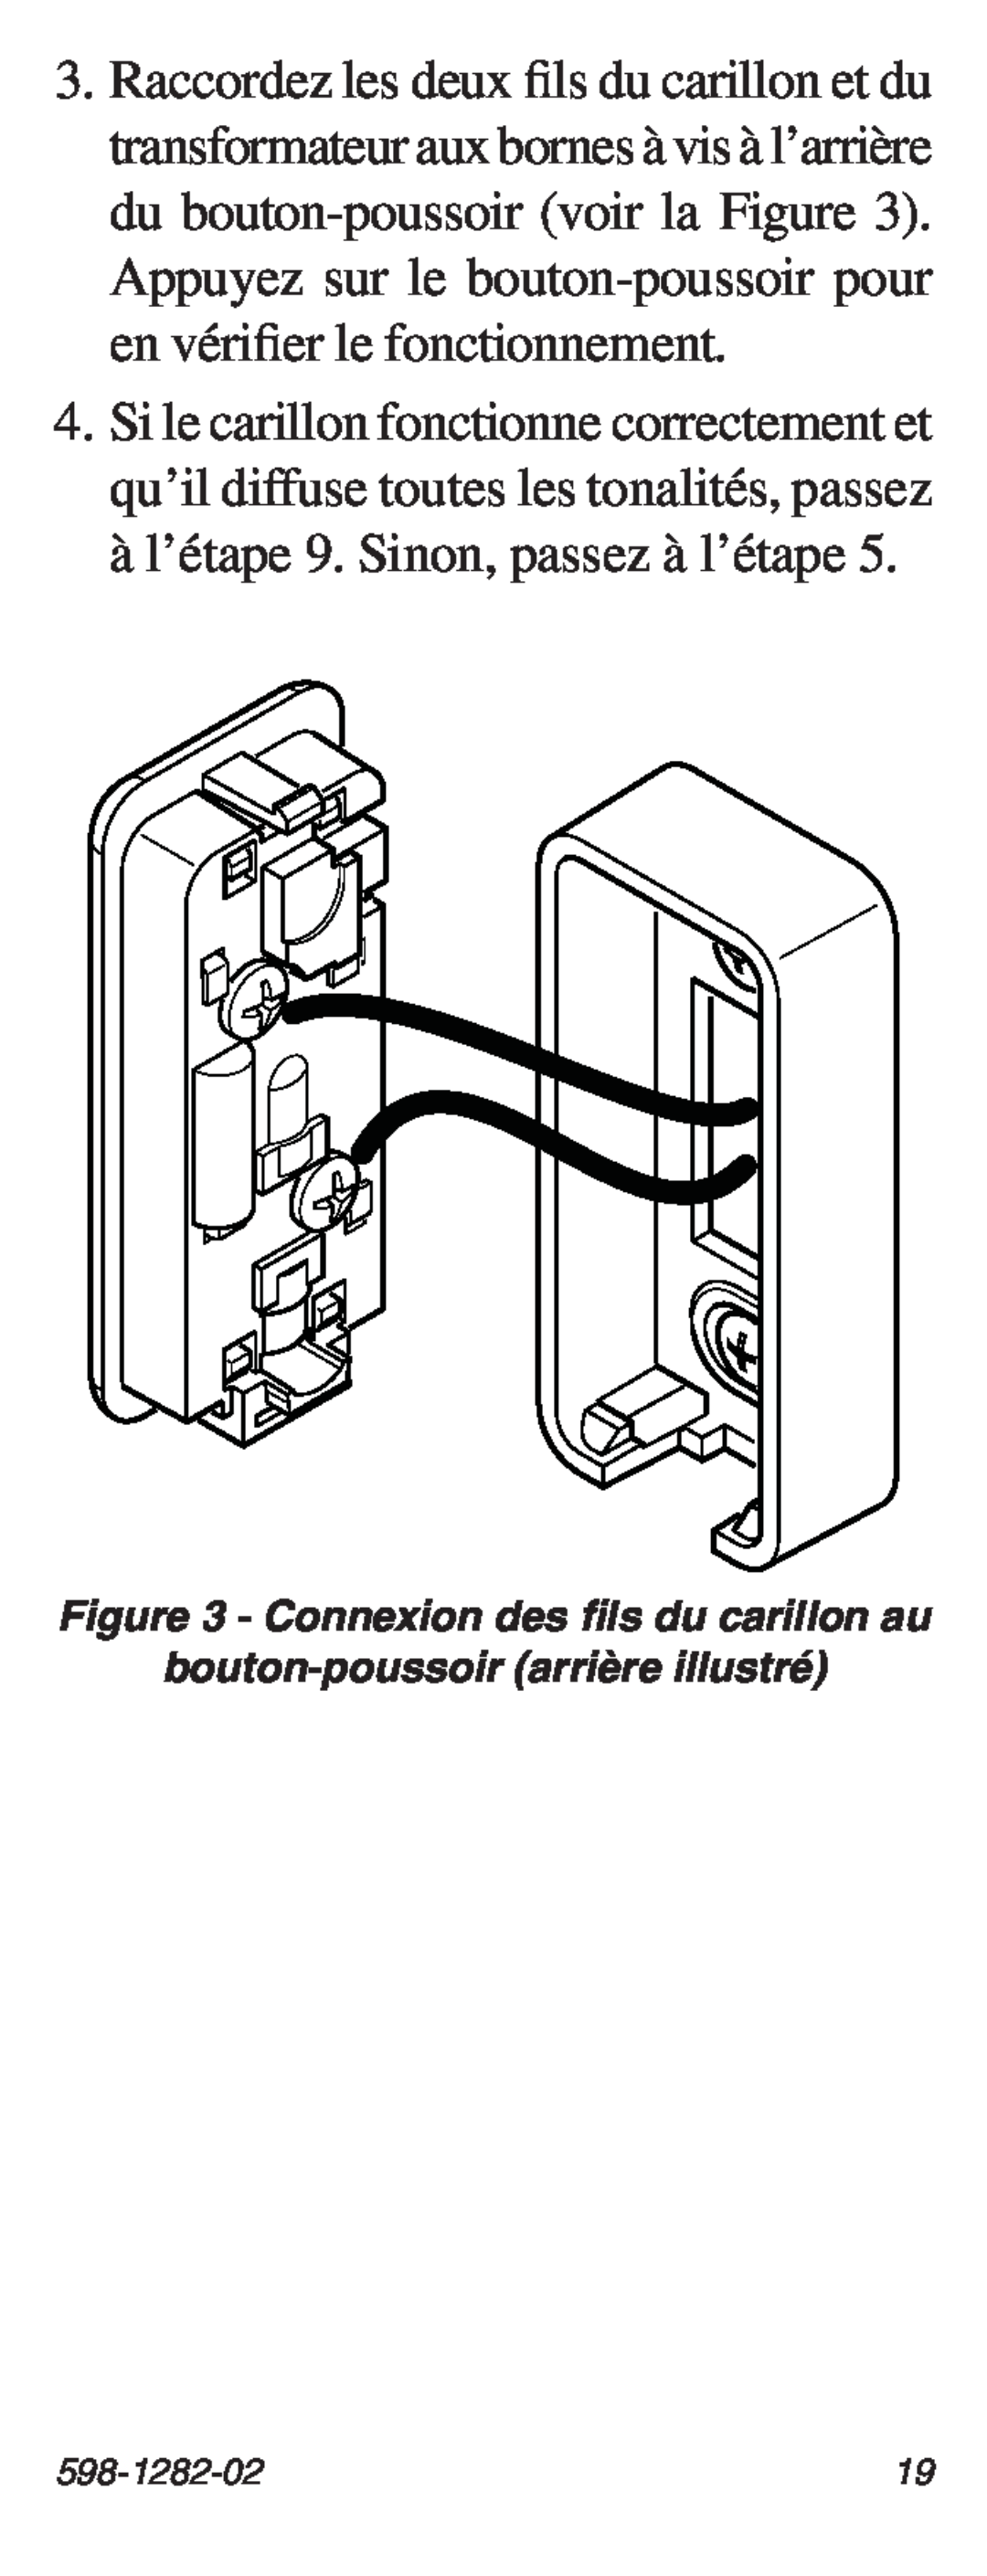 Heath Zenith 598-1282-02 manual Connexion des fils du carillon au, bouton-poussoirarrière illustré 